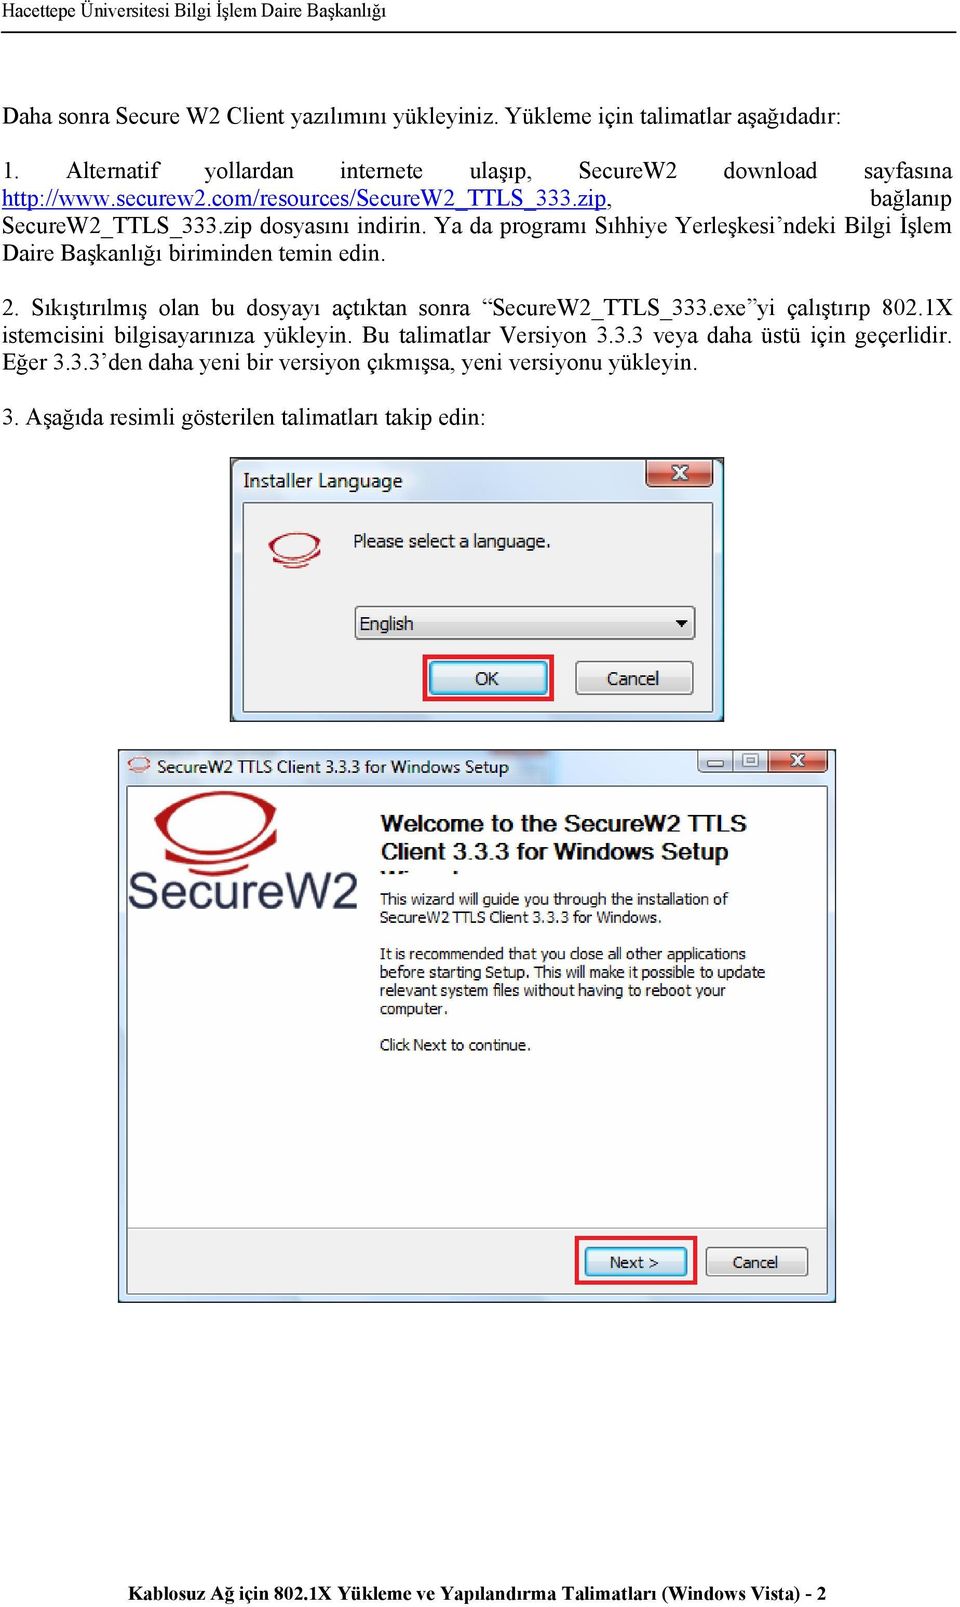 Sıkıştırılmış olan bu dosyayı açtıktan sonra SecureW2_TTLS_333.exe yi çalıştırıp 802.1X istemcisini bilgisayarınıza yükleyin. Bu talimatlar Versiyon 3.3.3 veya daha üstü için geçerlidir.